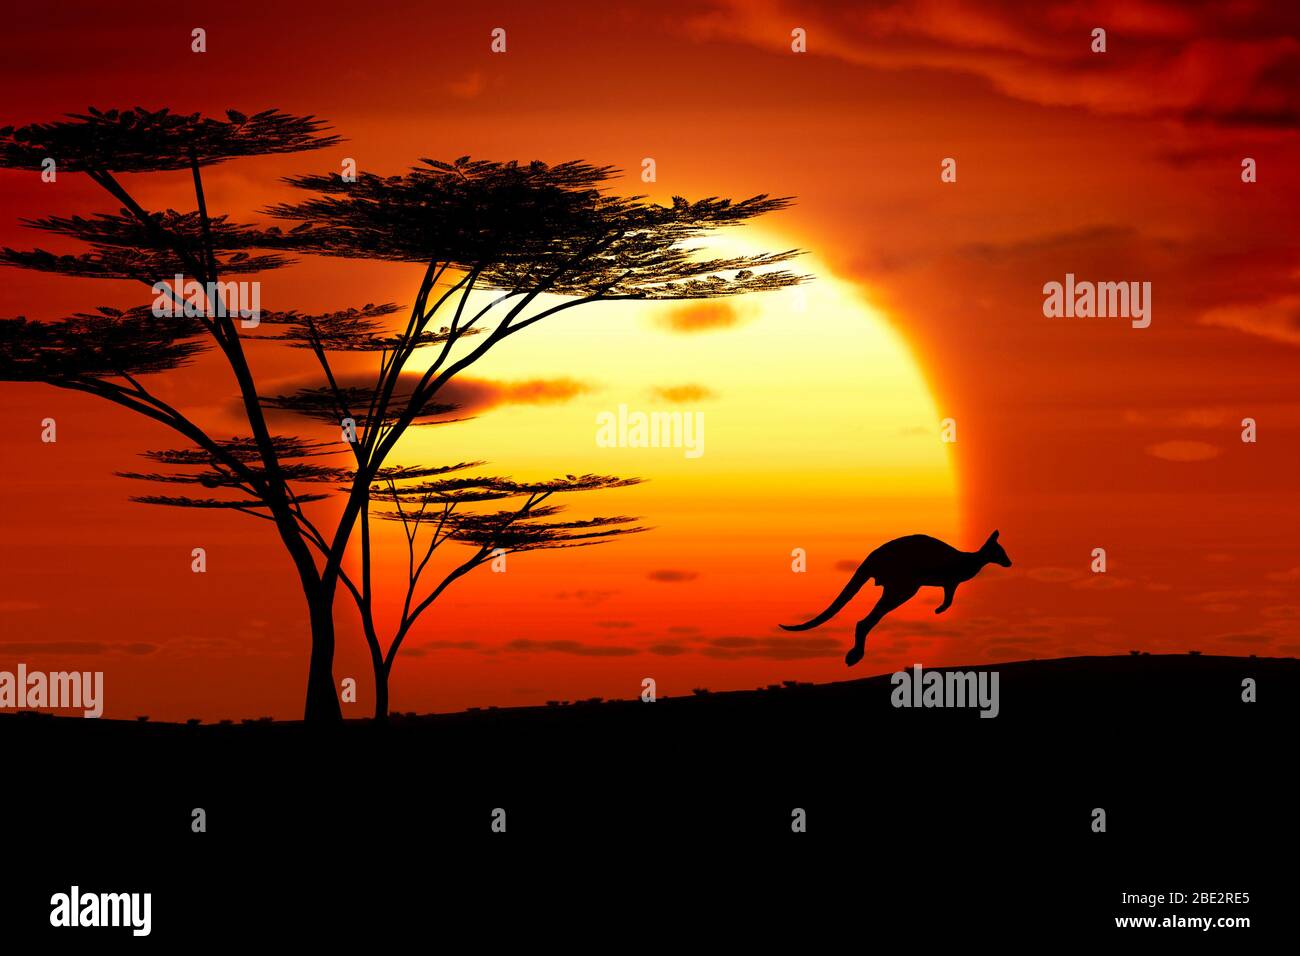 Die Silhouette eines Kaengurus vor einem Sonnenuntergang Stock Photo